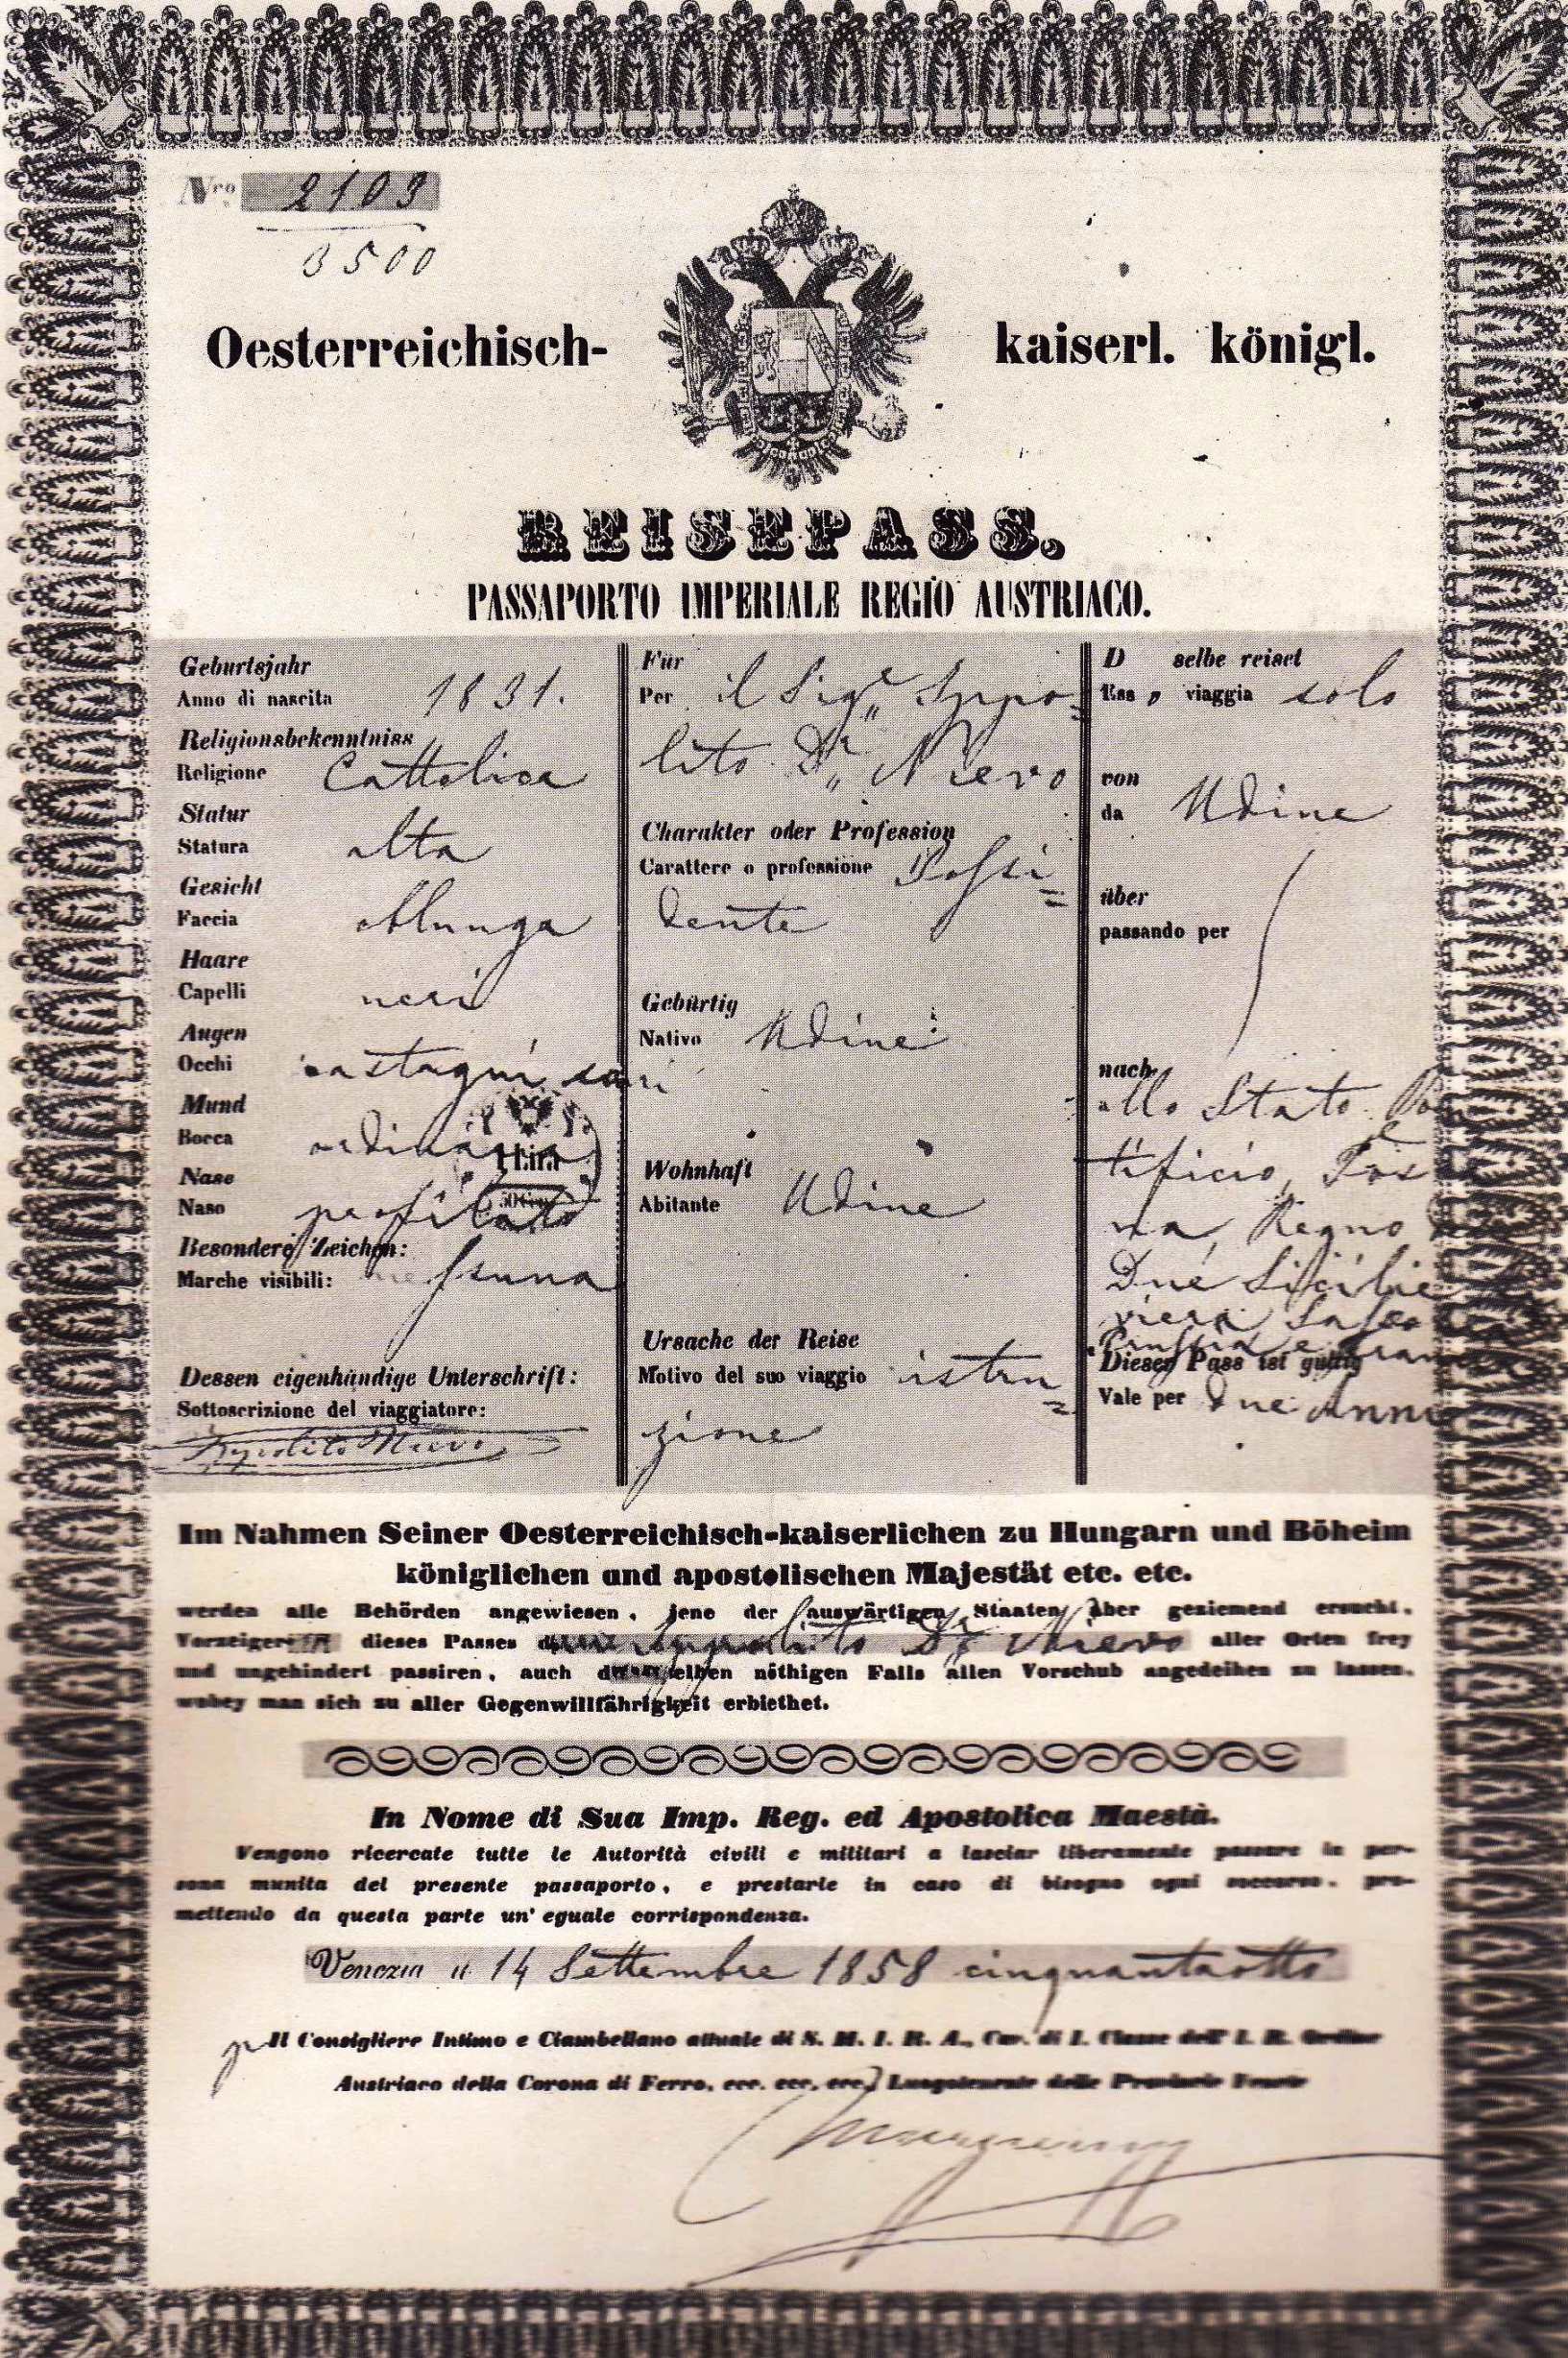 Passaporto di Ippolito Nievo in data 14 settembre 1858 